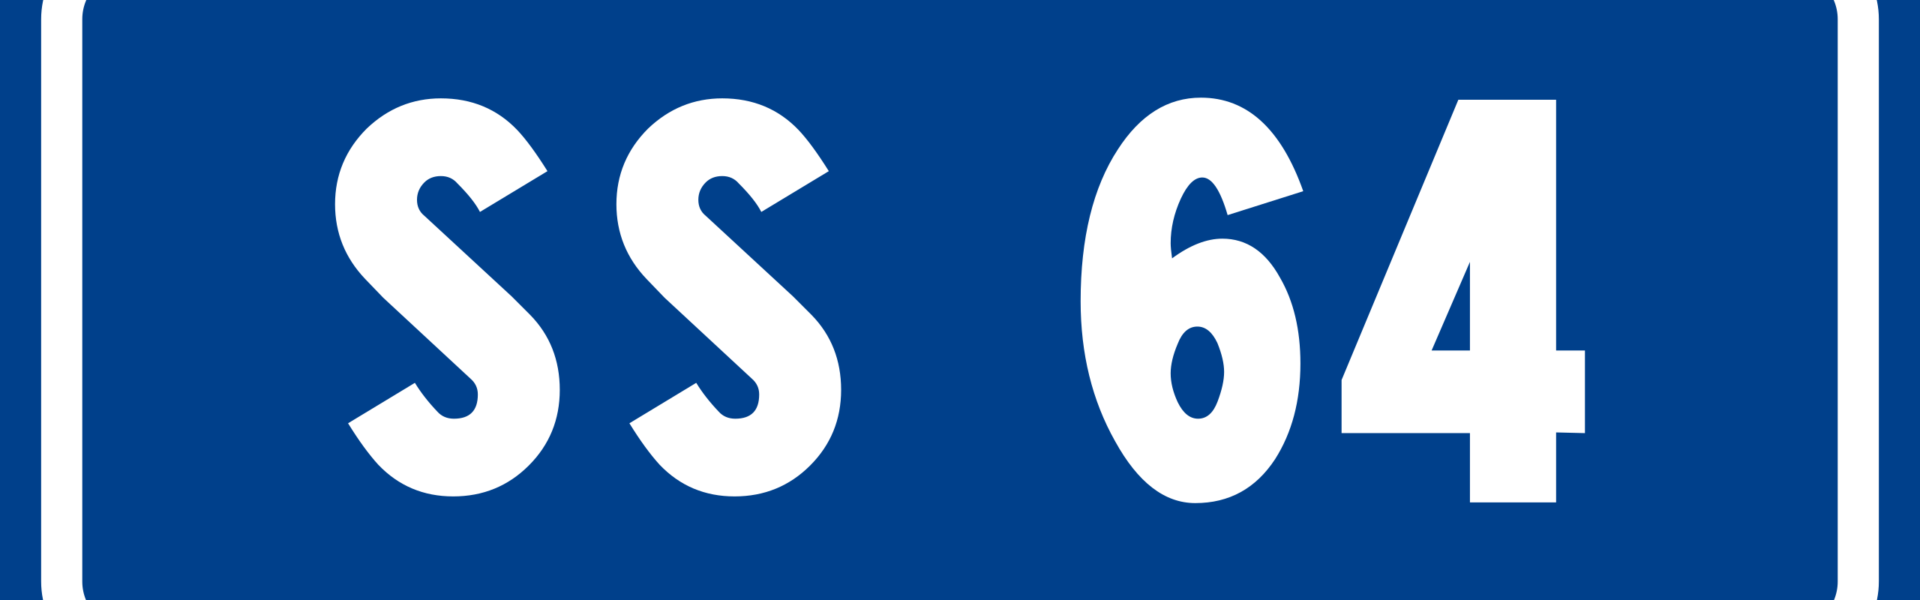 SS64 Porrettana